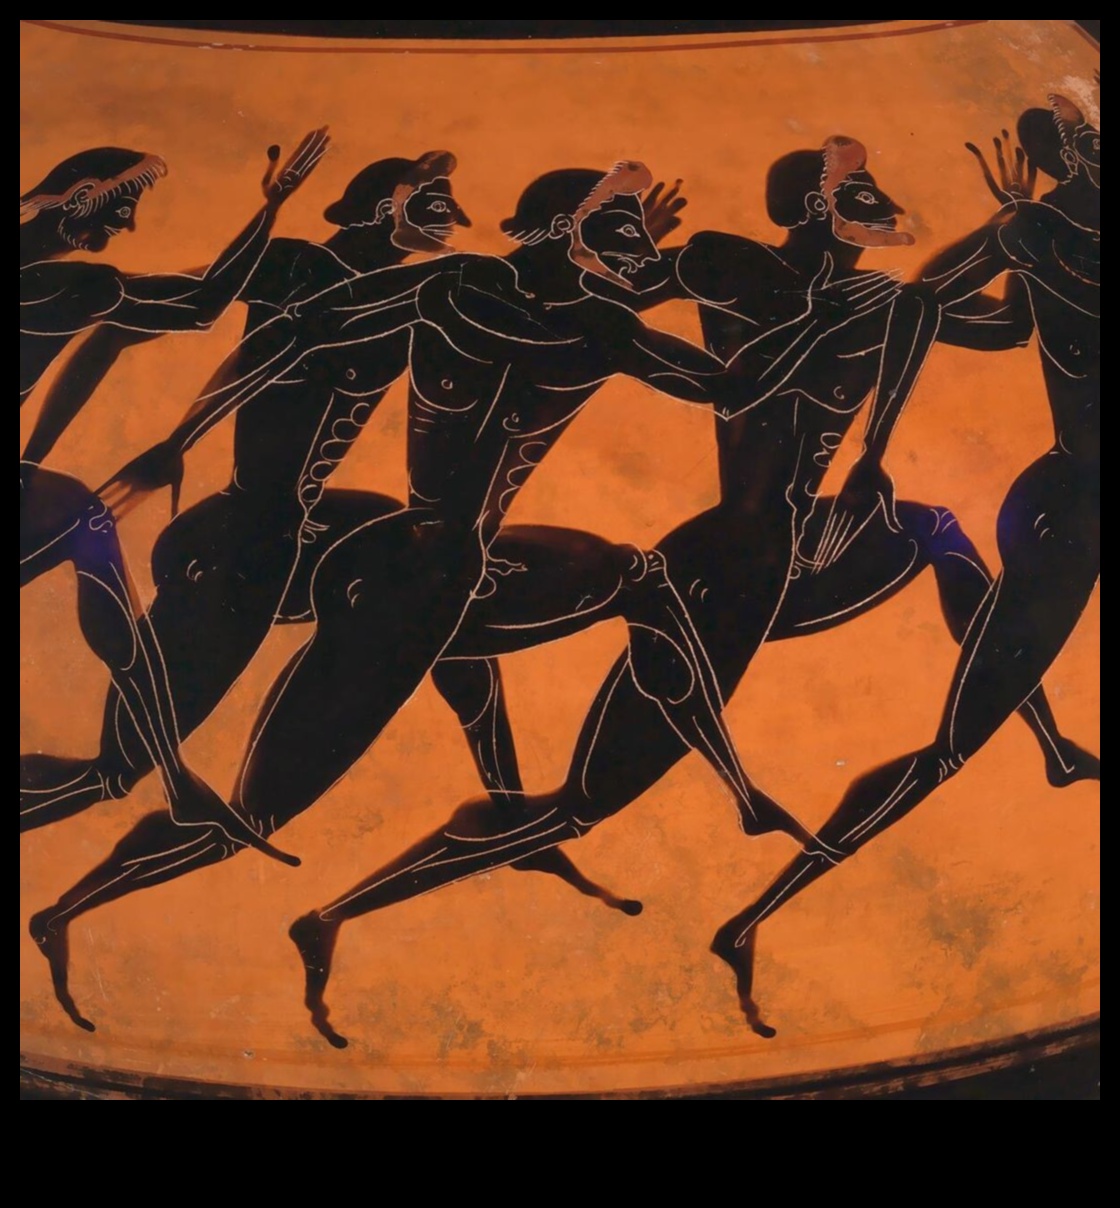 Triumfurile Olympiei: teme sportive în arta greacă